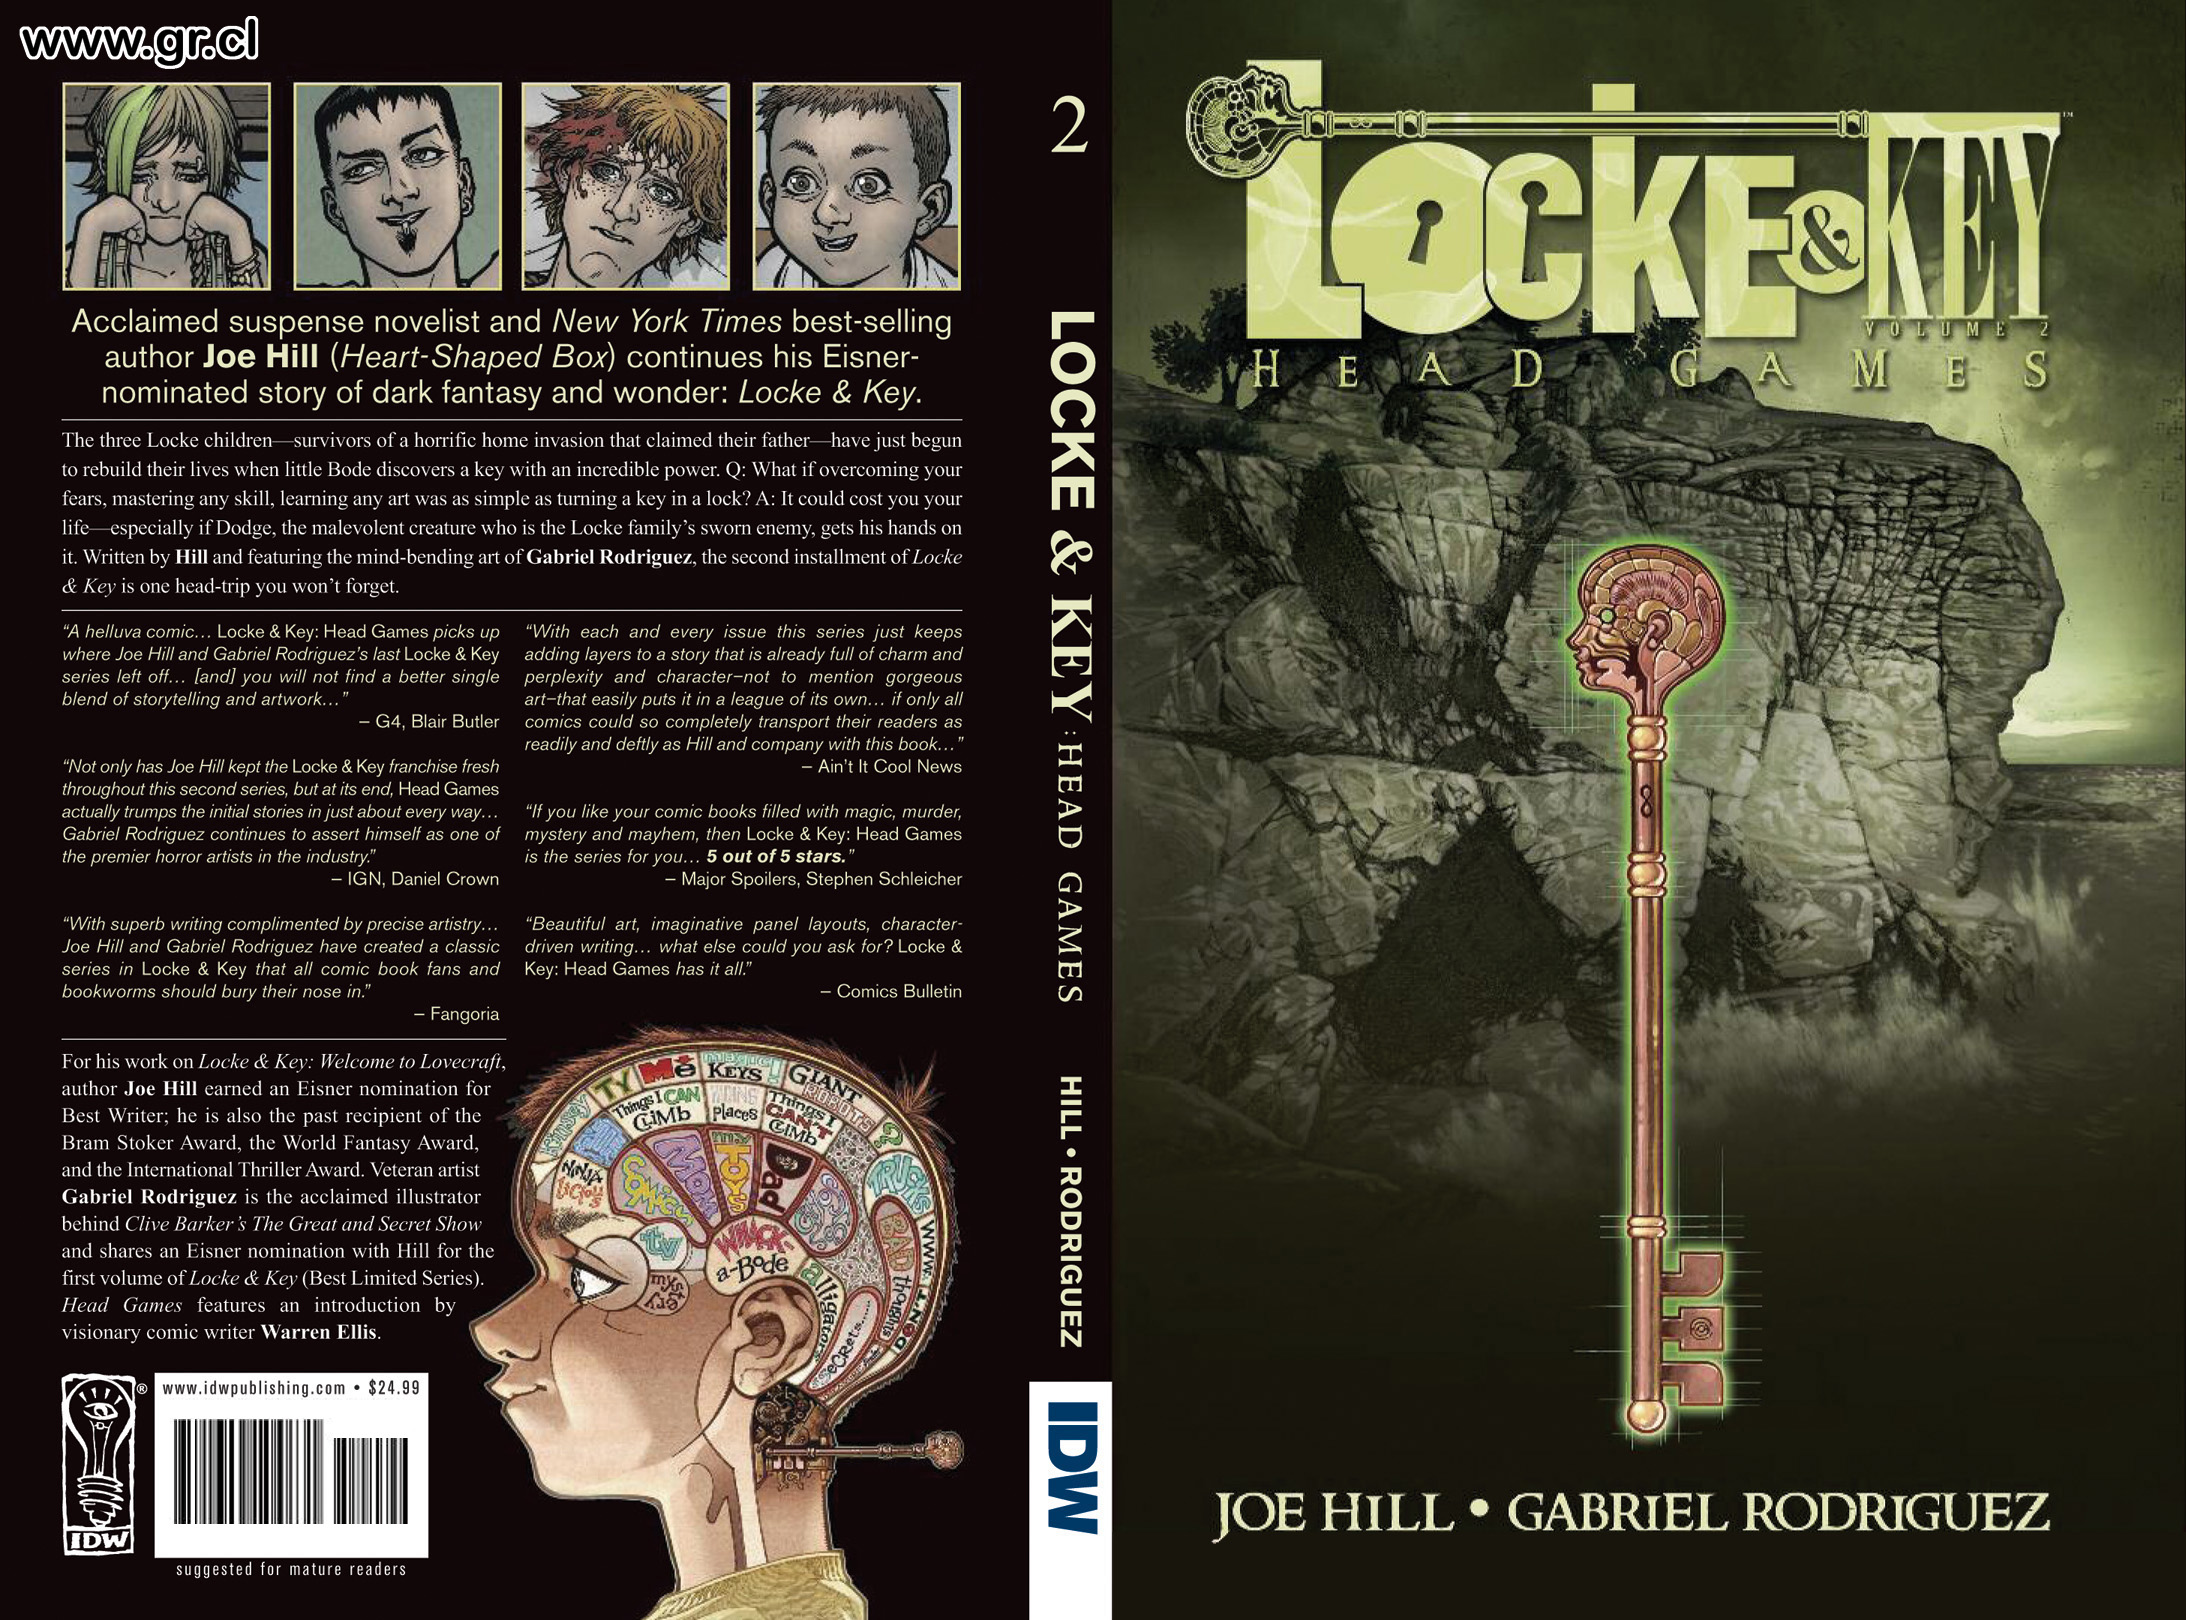 Locke & Key #7